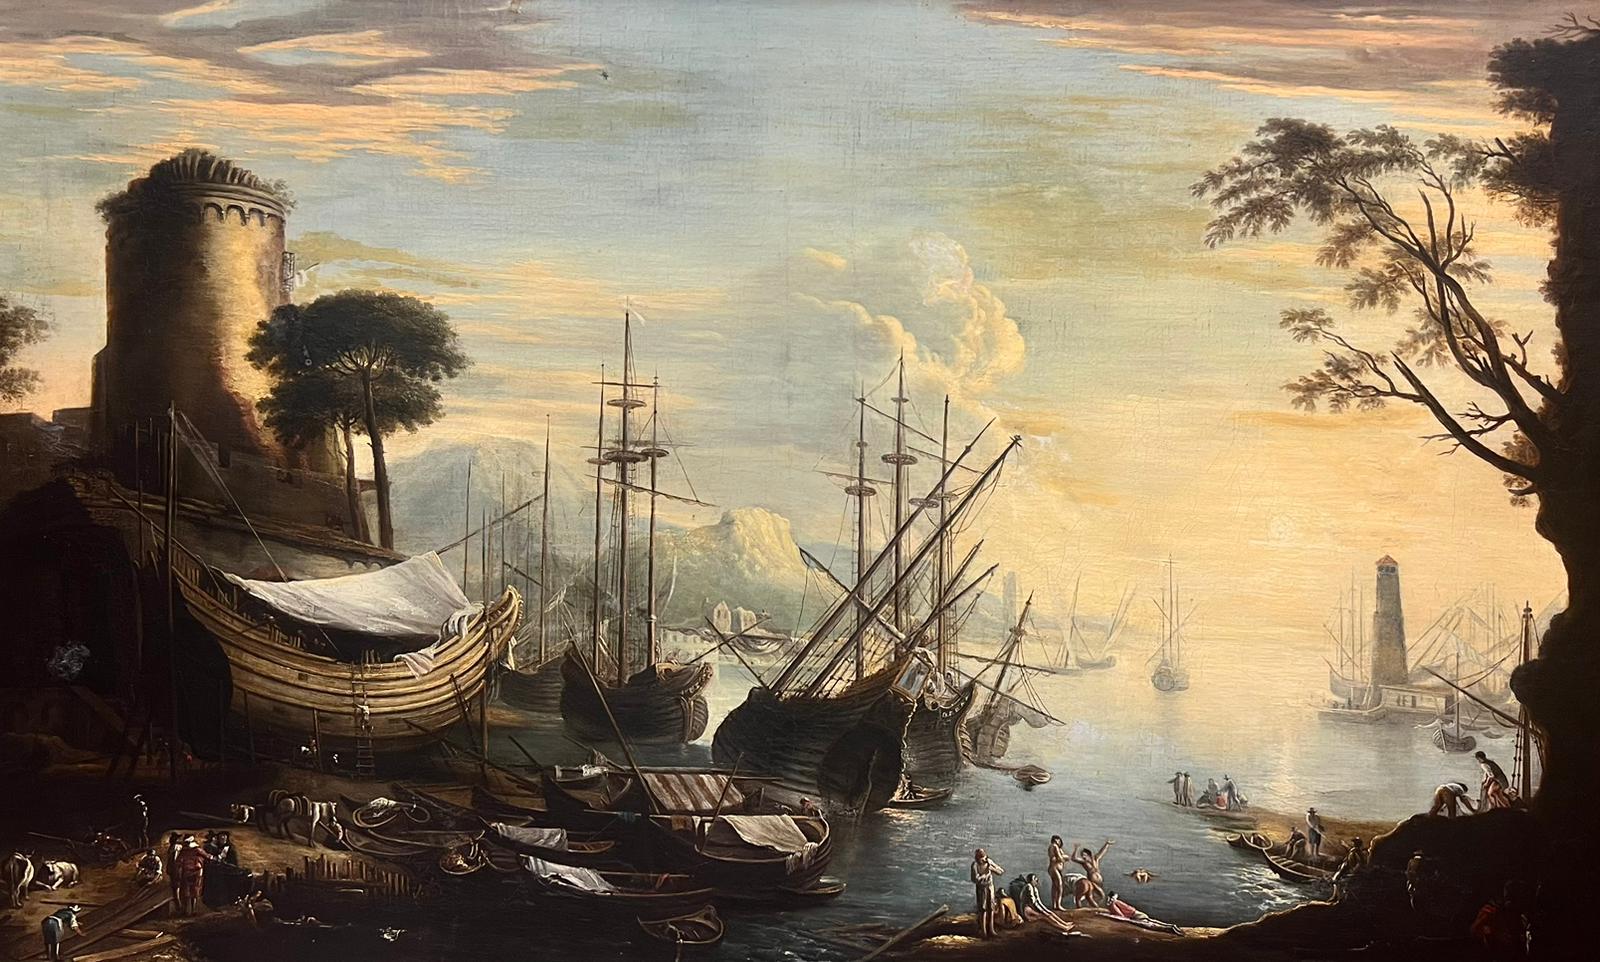 Figurative Painting 18thC Italian Old Master - Grande peinture à l'huile italienne du 18ème siècle représentant un navire marchand et de nombreuses figures